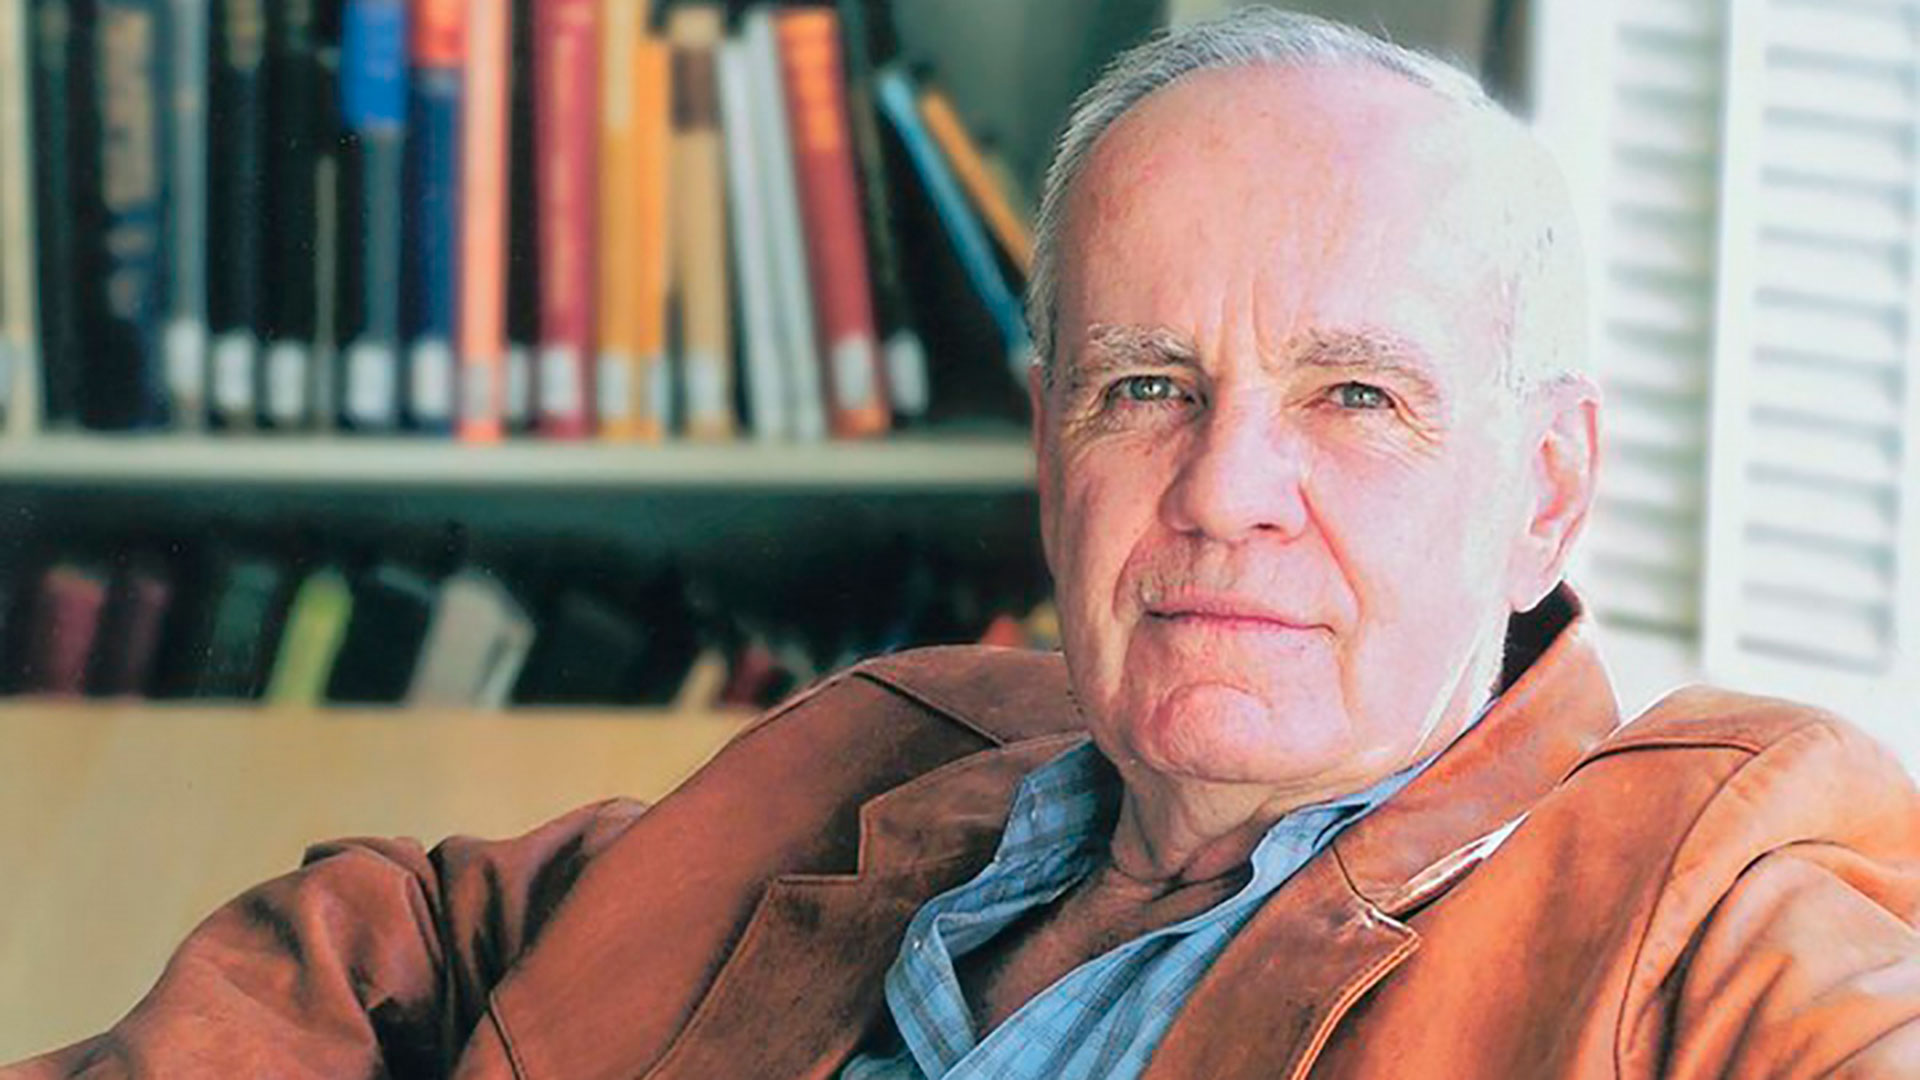 El escritor Cormac McCarthy murió a los 89 años en su casa de Nuevo Mexico